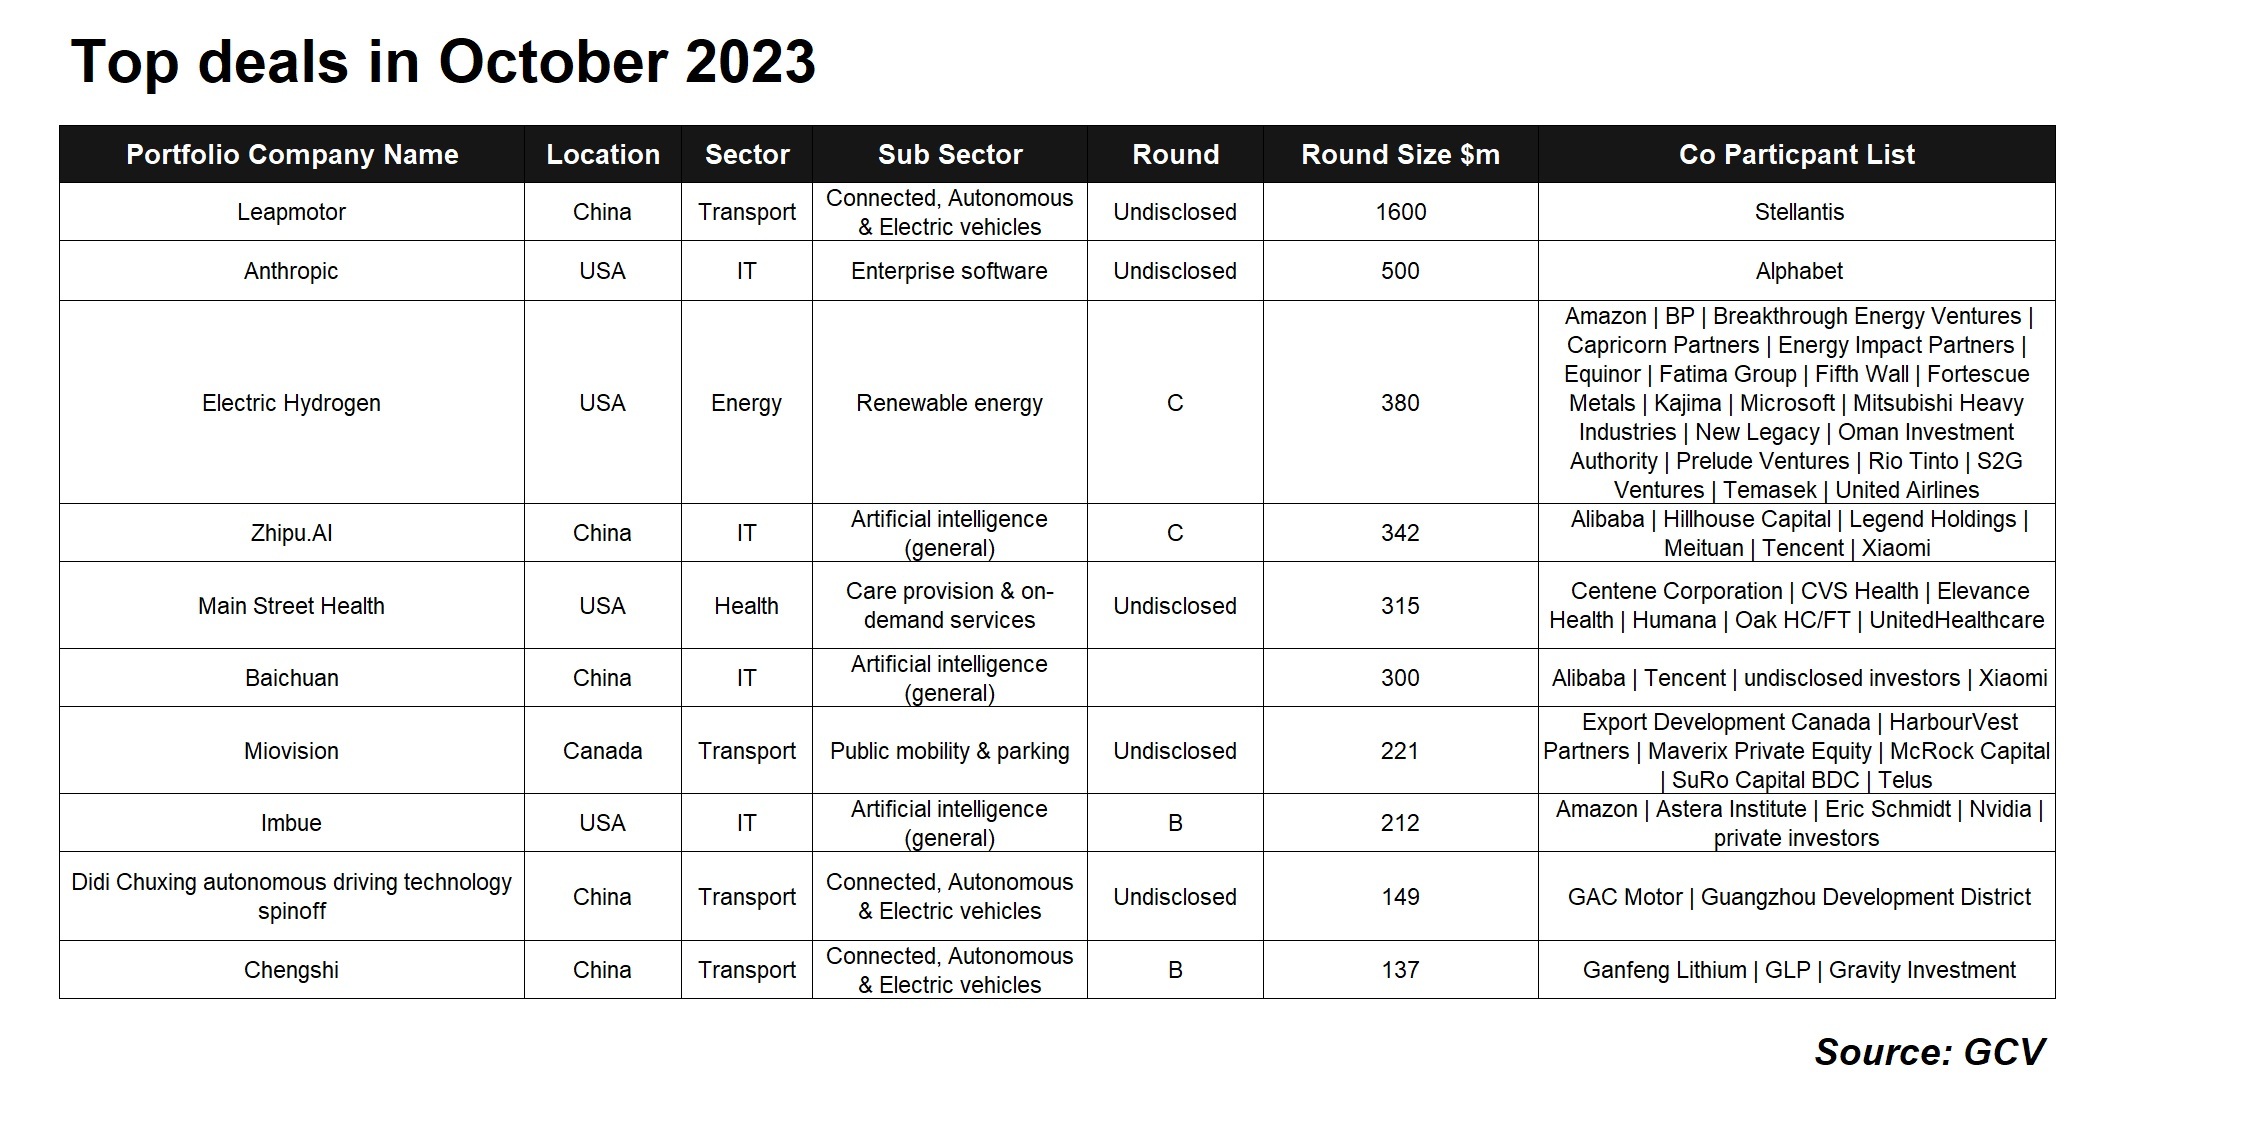 Top deals in October 2023